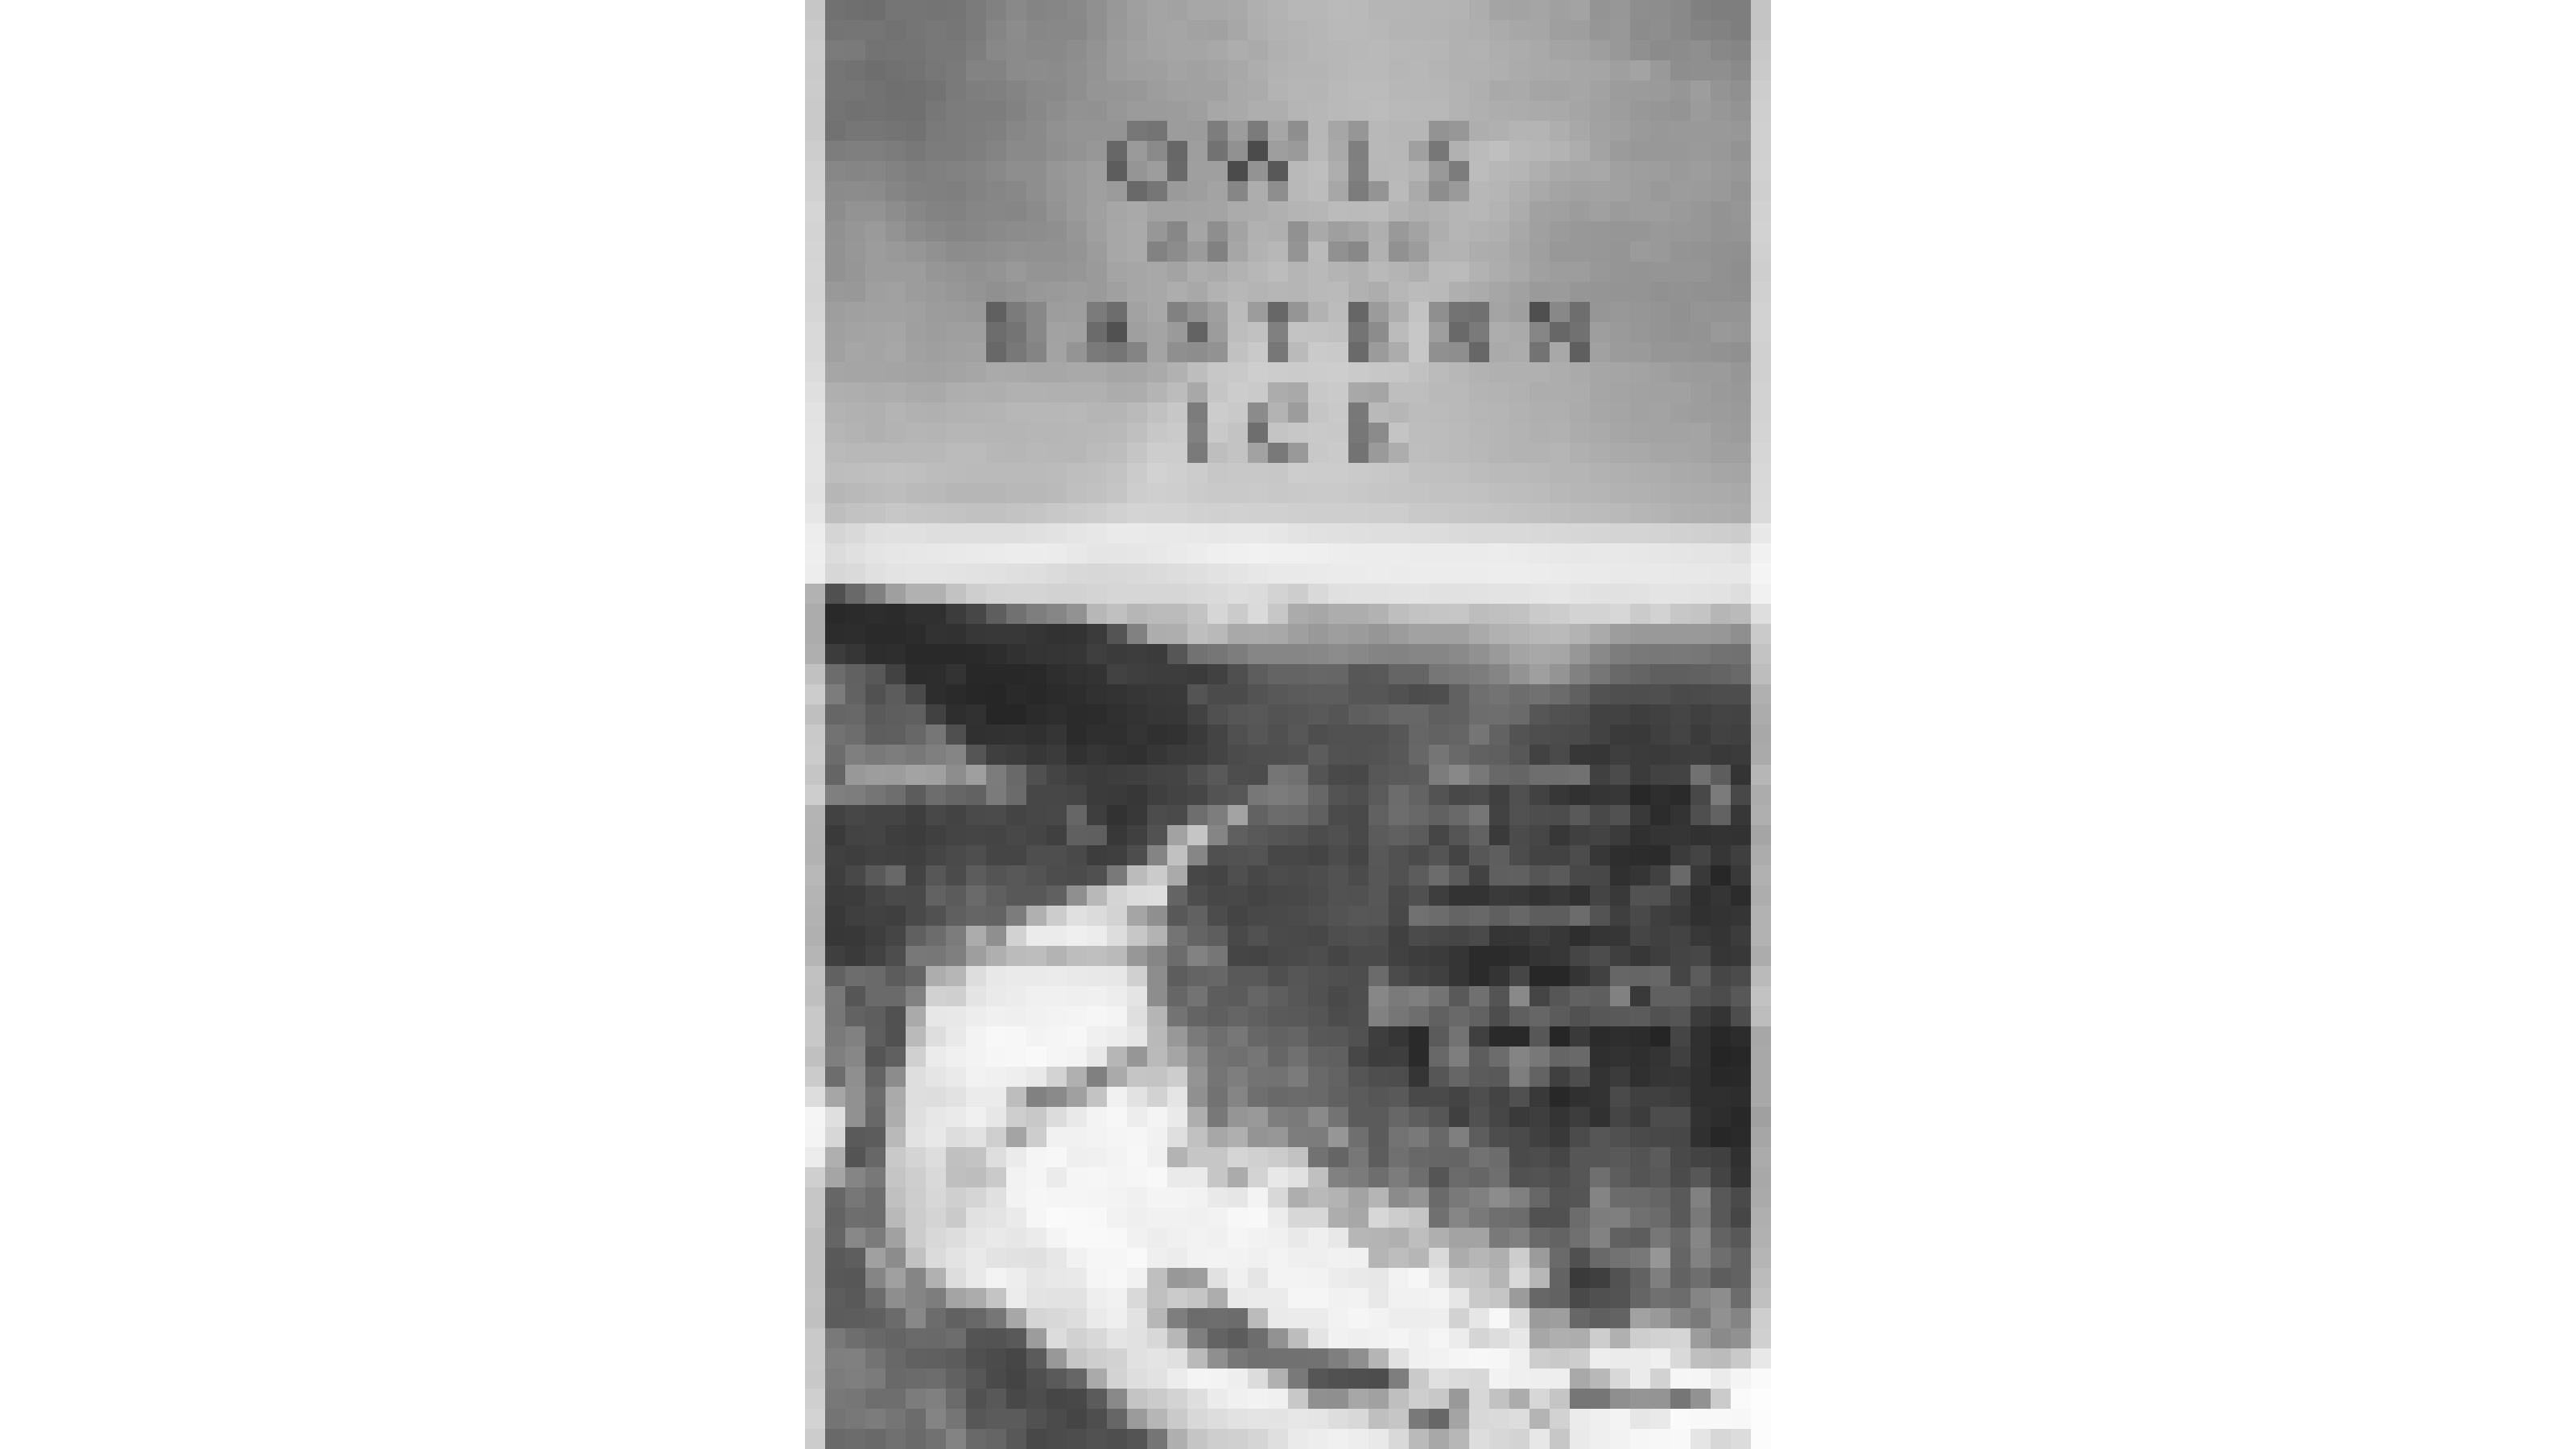 Schwarz-weiß-Cover der britischen Fassung von Jonathan Slaght’s Buch „Owls of the Eastern Ice“. Zu sehen ist ein vereister Fluss in einem bewaldeten Tal. Mit freundlicher Genehmigung des Verlags